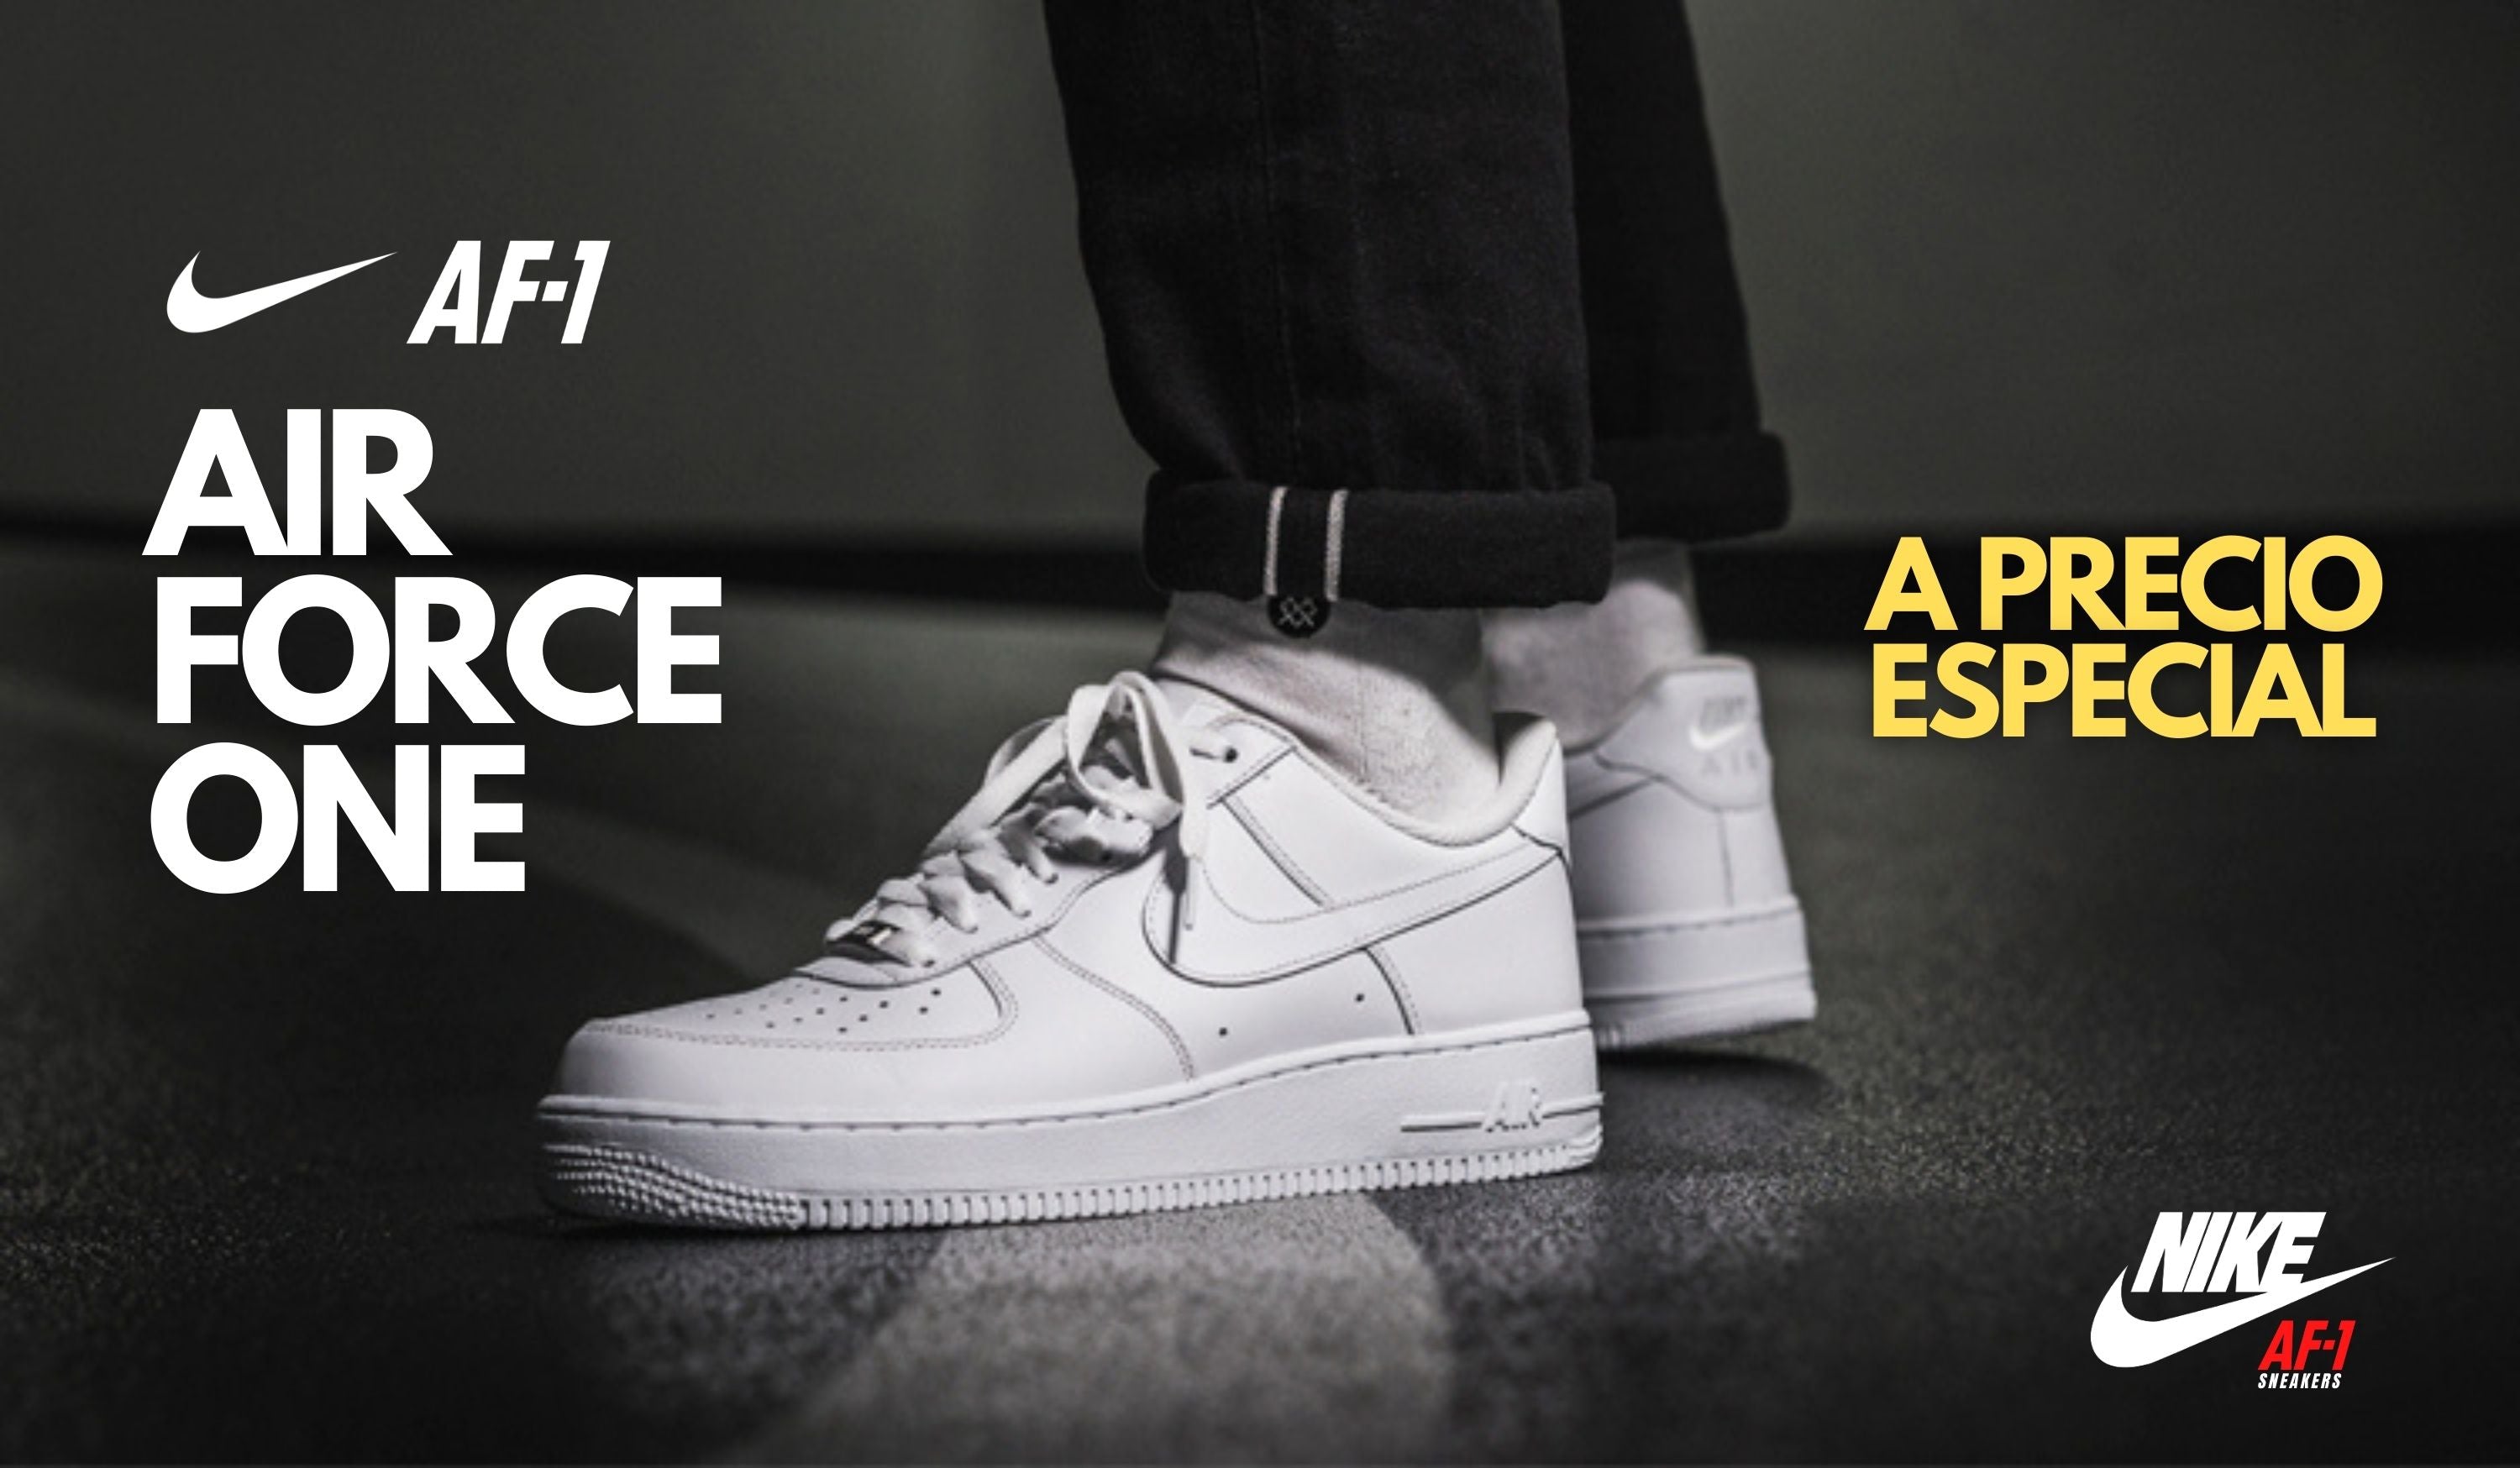 Force 1 One Originales Nike – AF -1 Air Force